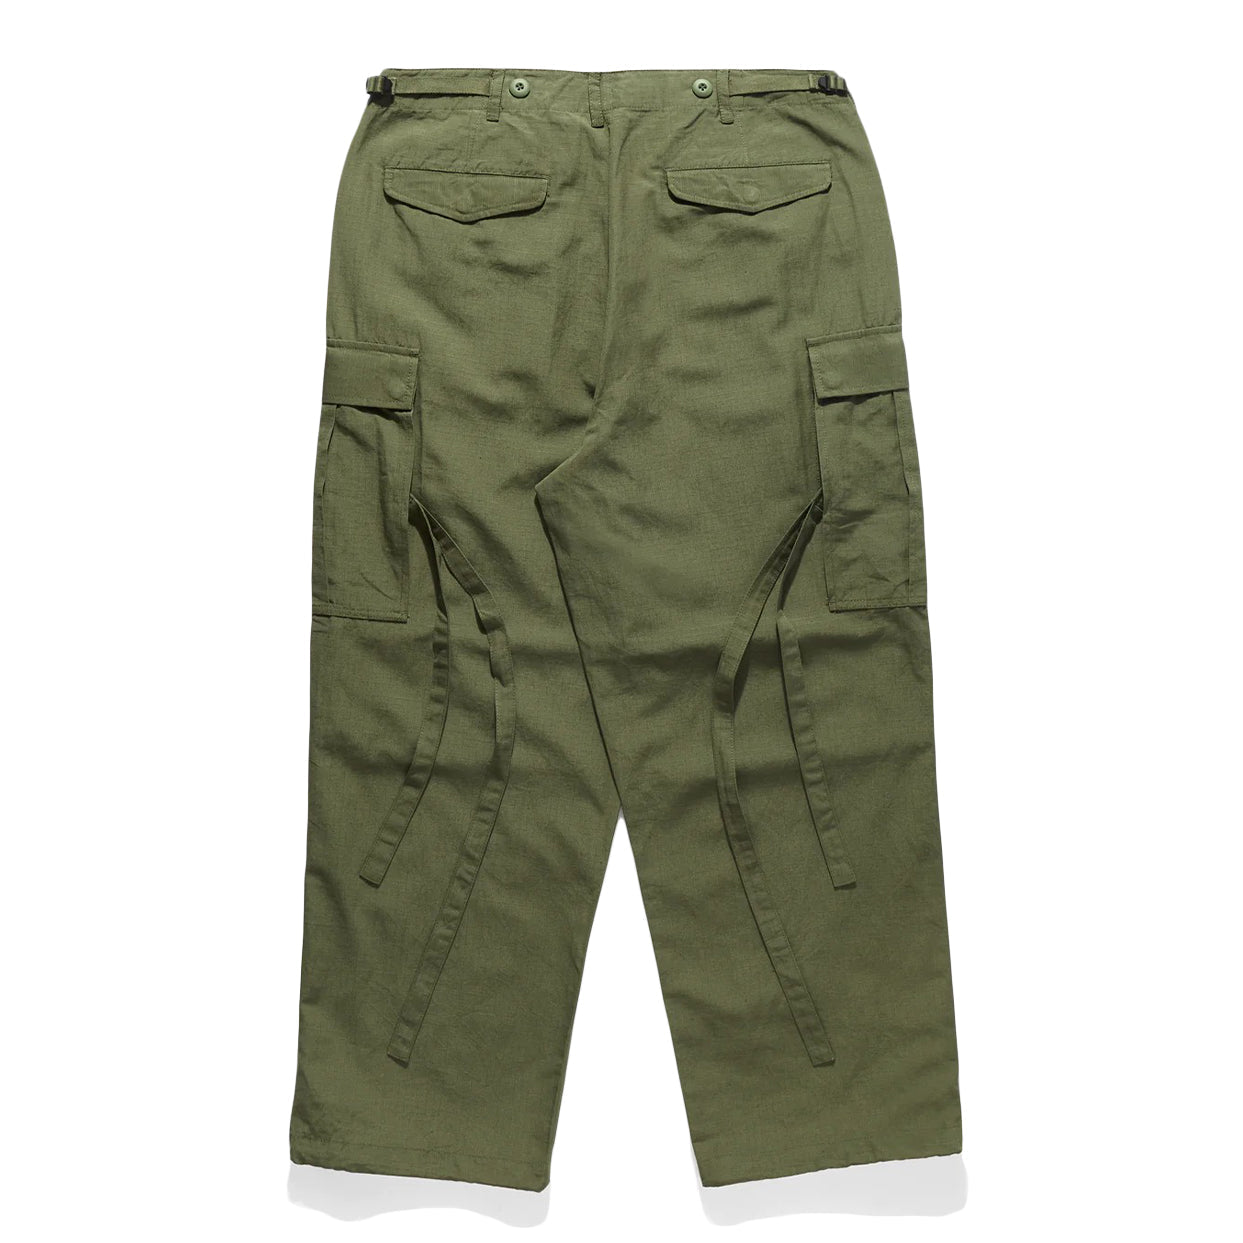 https://www.solestop.com/cdn/shop/products/maharishi-men-m65-loose-cargo-pants-olive-950.jpg?v=1677532852